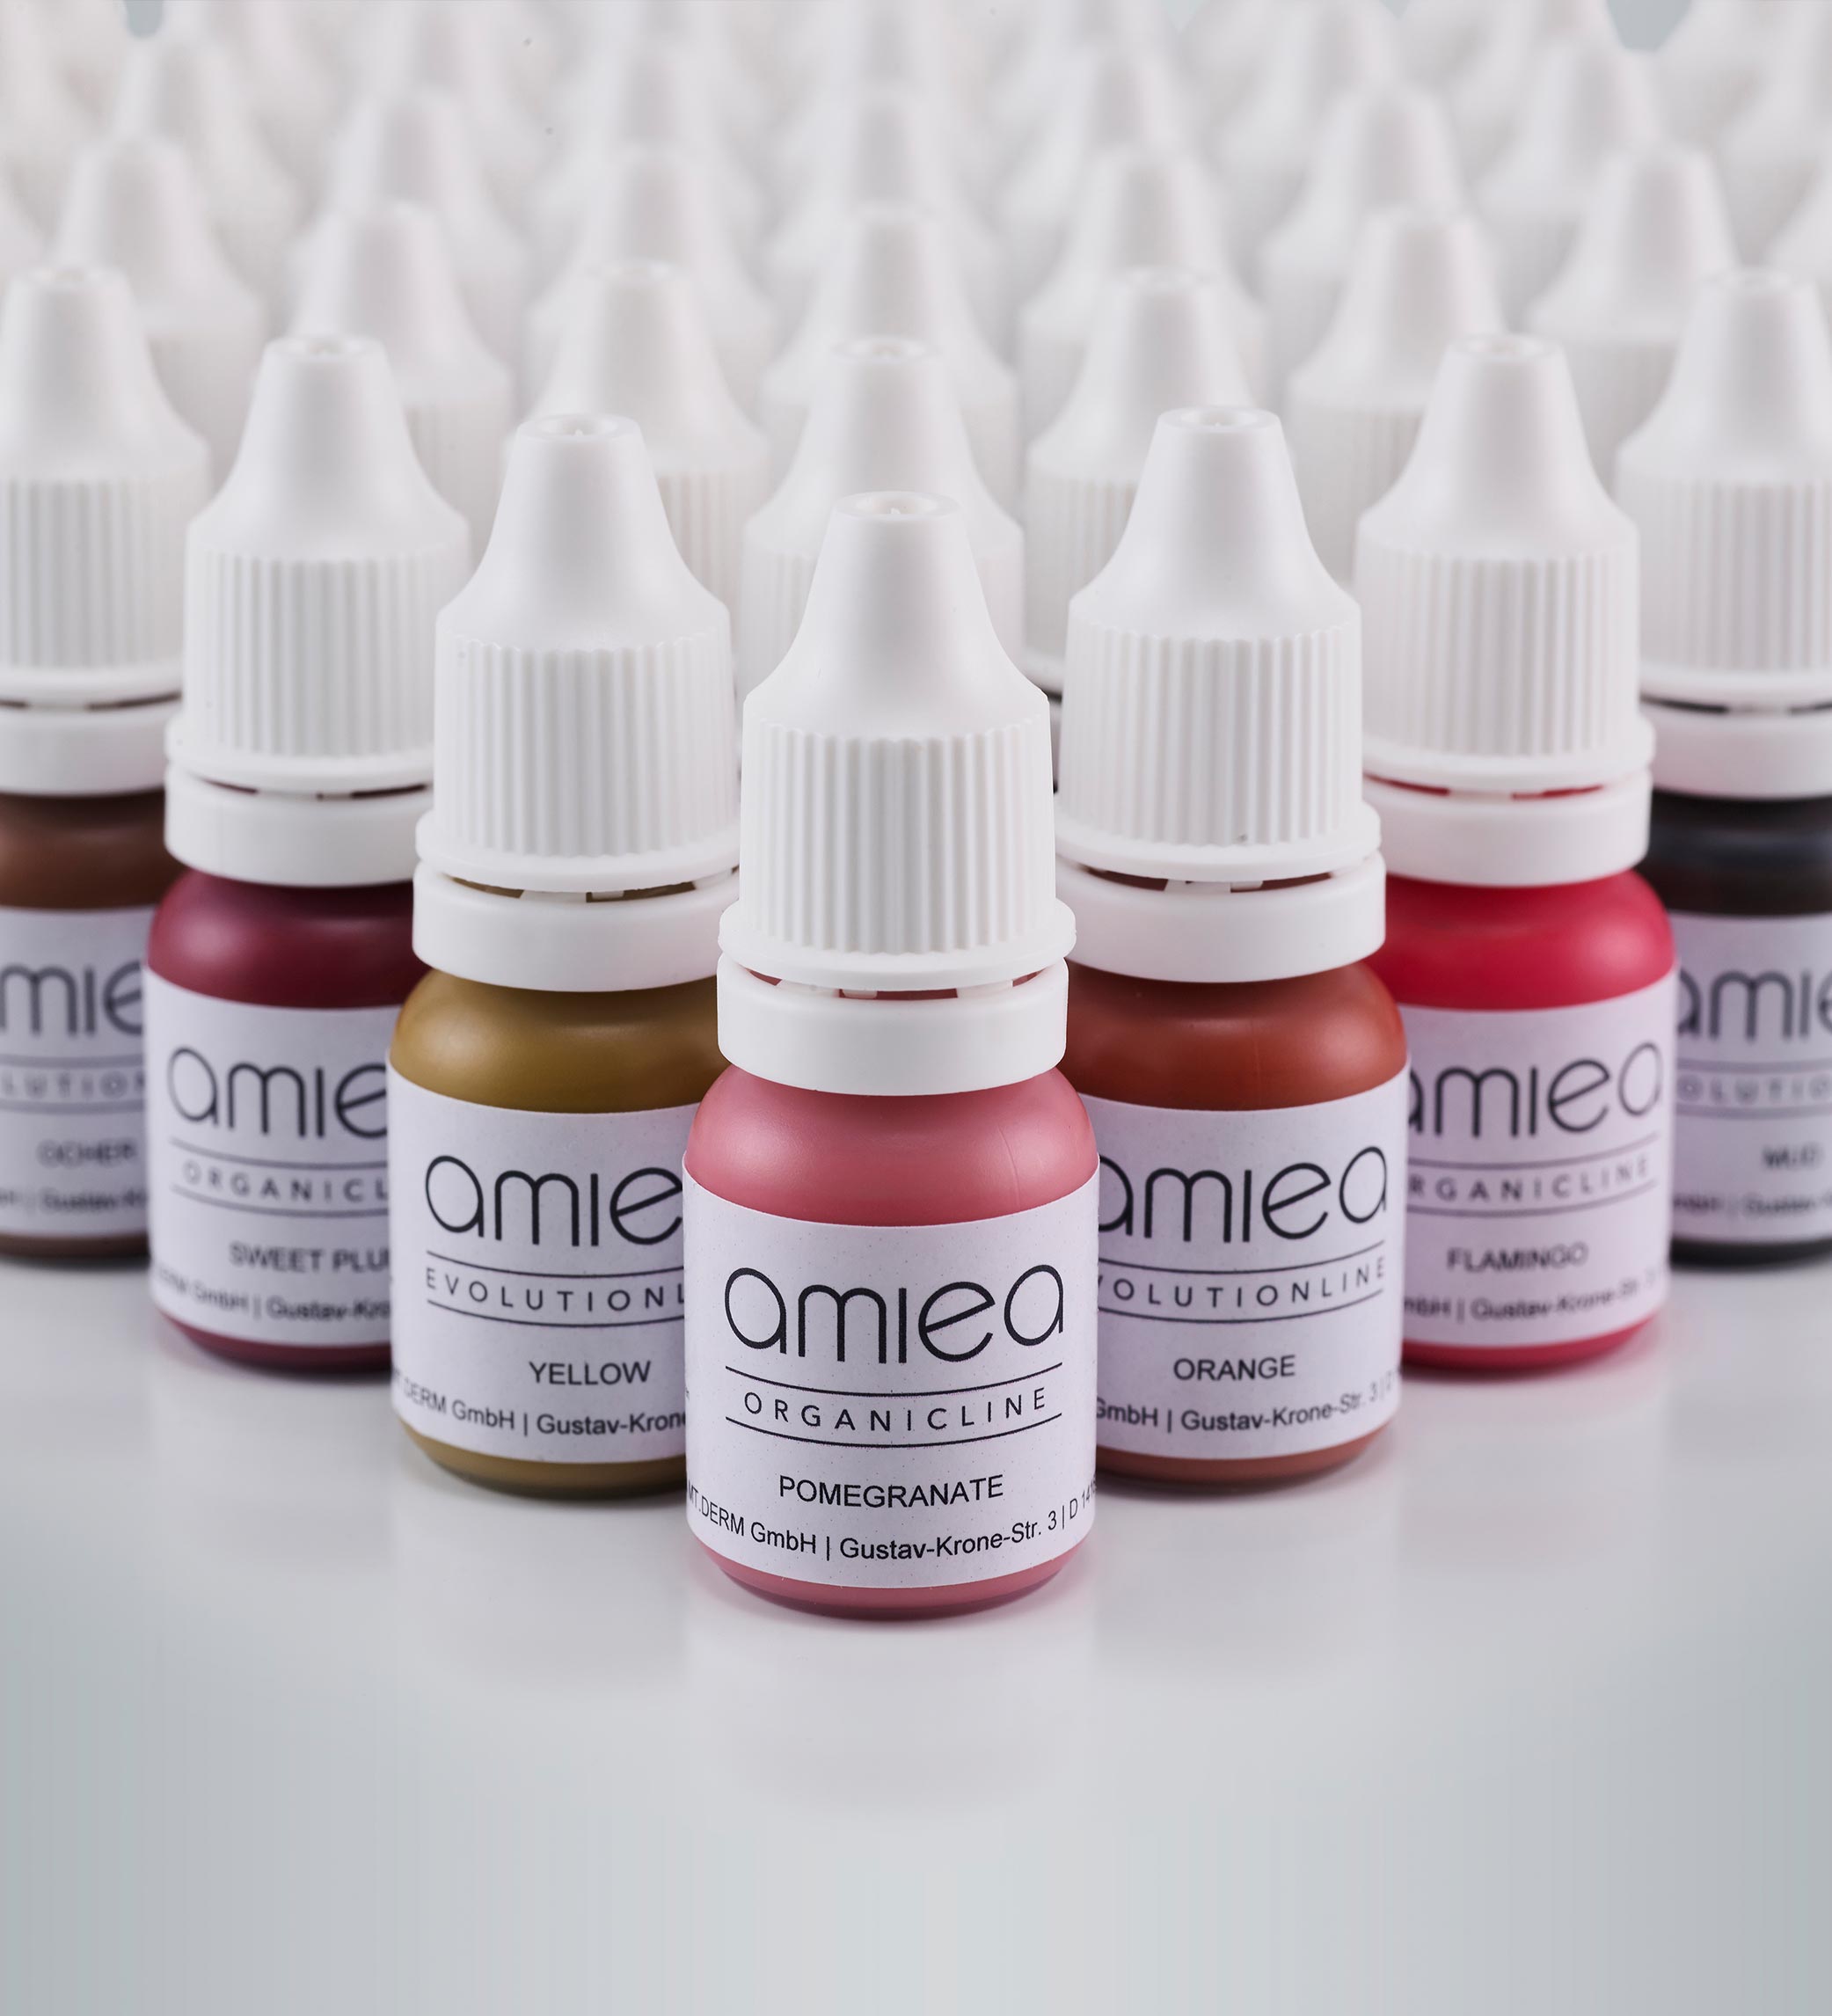 Bild mit der Vielfalt der amiea PMU-Farbline Organicline auf grauem Boden